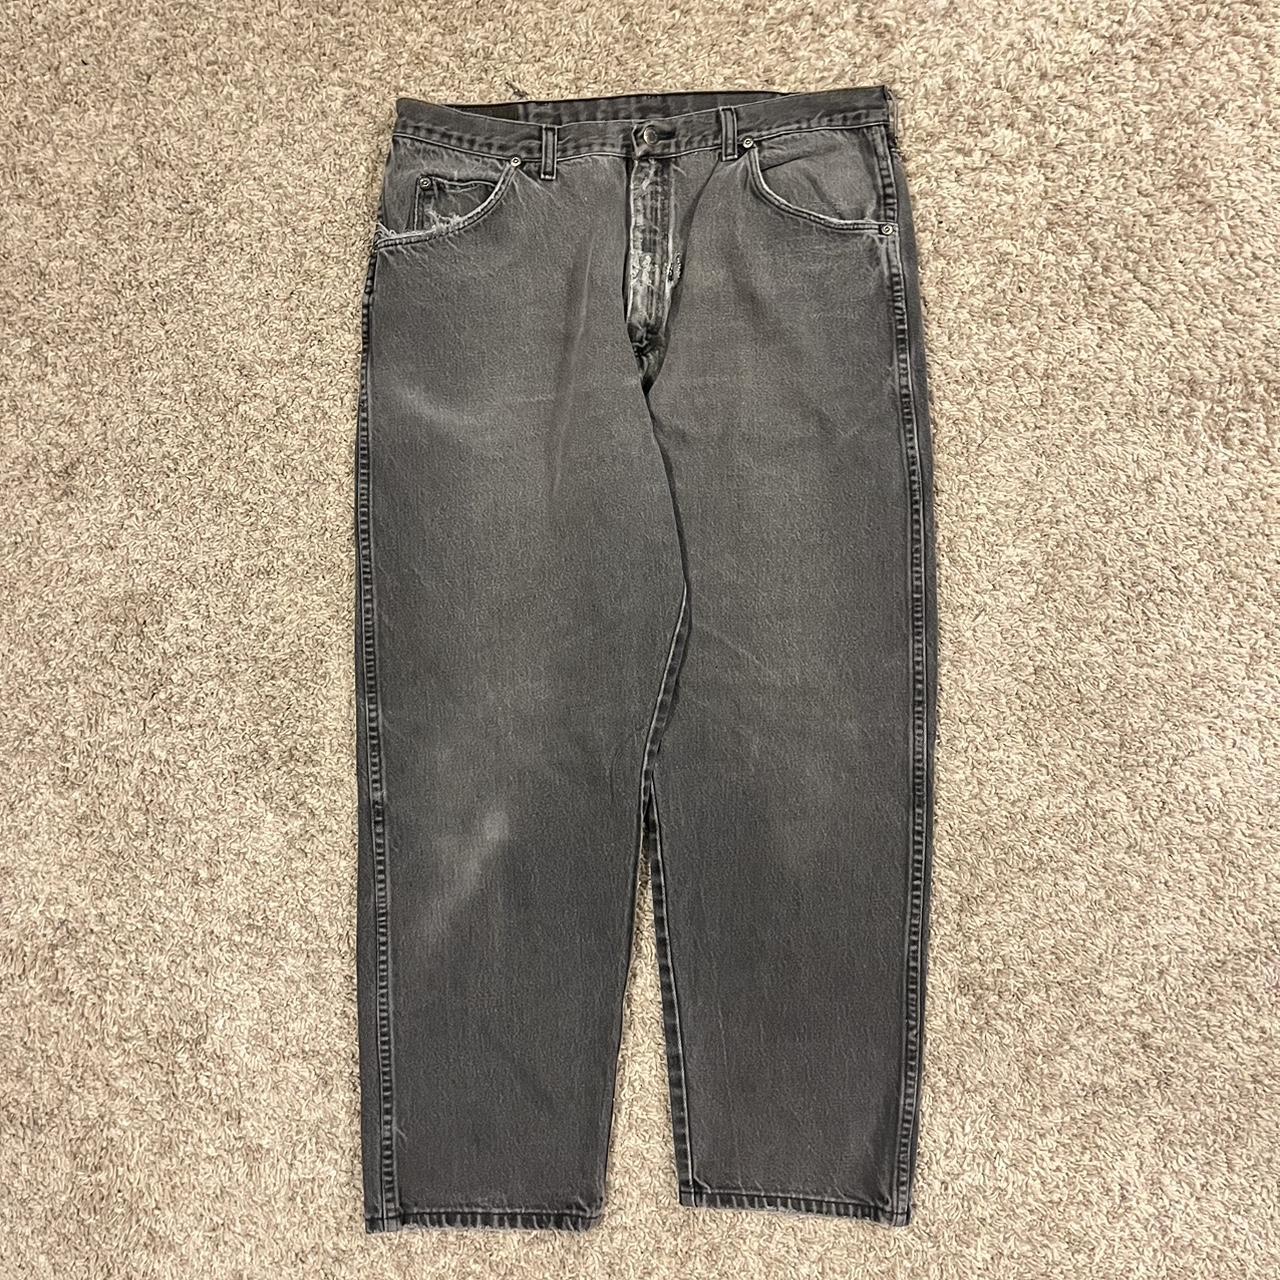 Baggy Skate Jeans Wrangler Faded Grey Color Size... - Depop